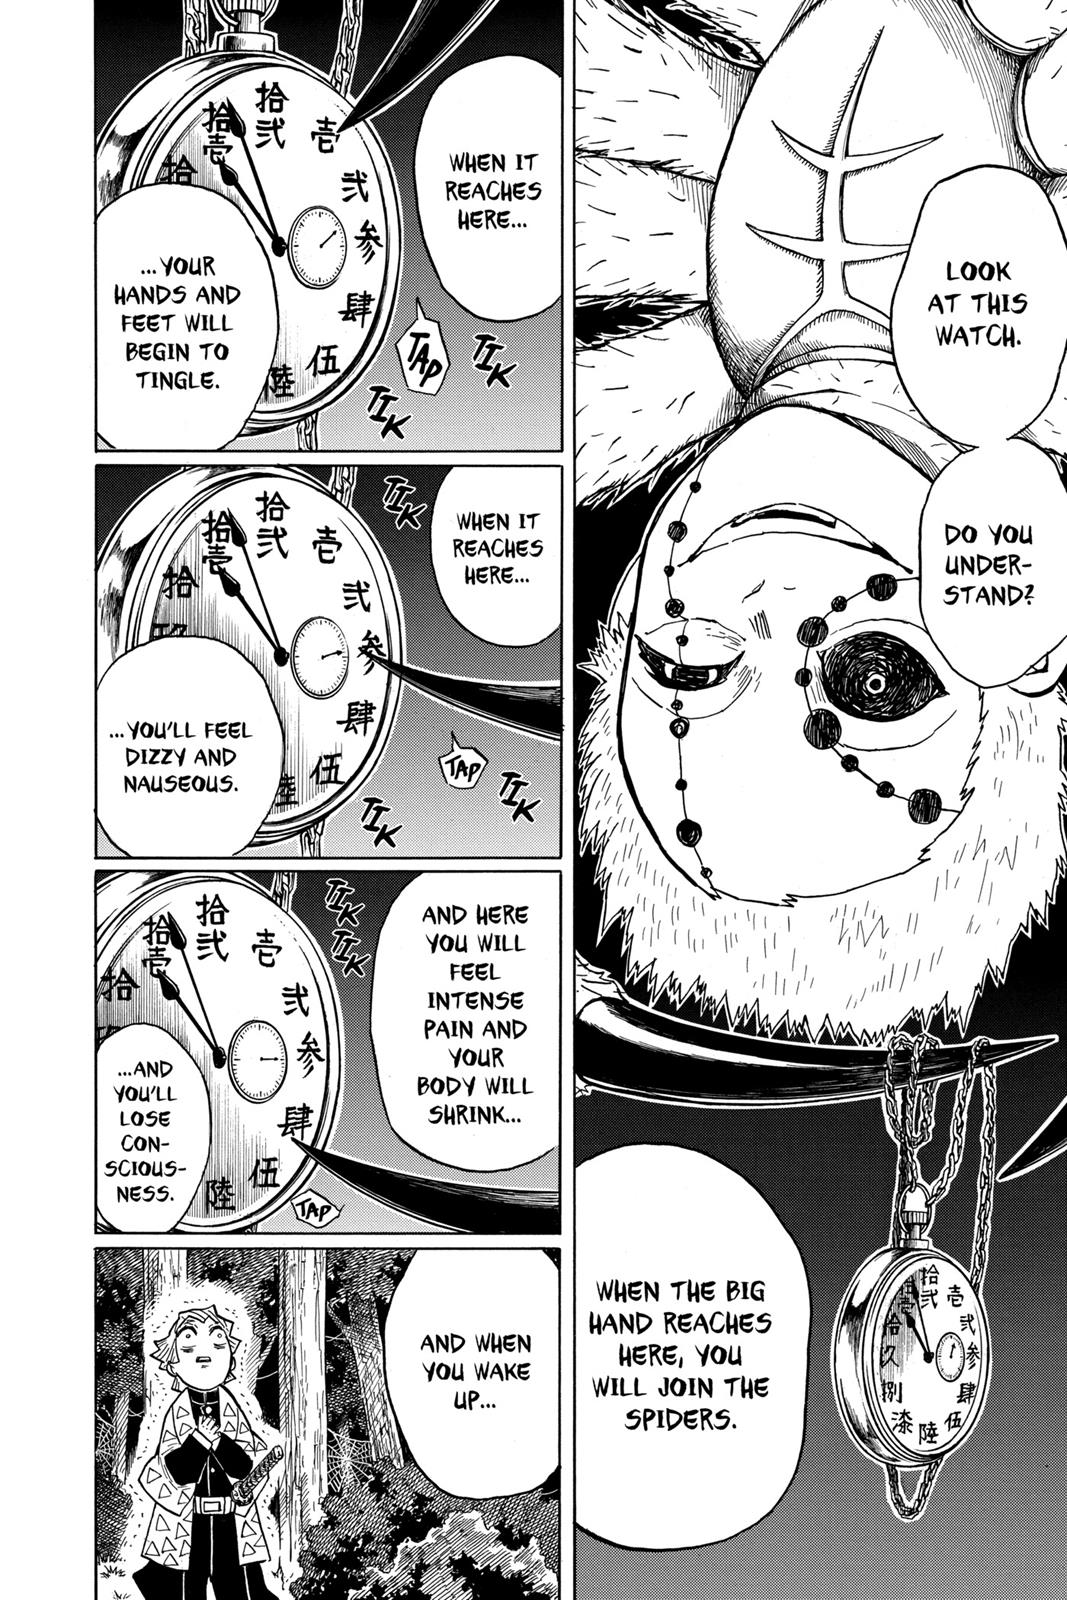 Demon Slayer Manga Manga Chapter - 33 - image 2